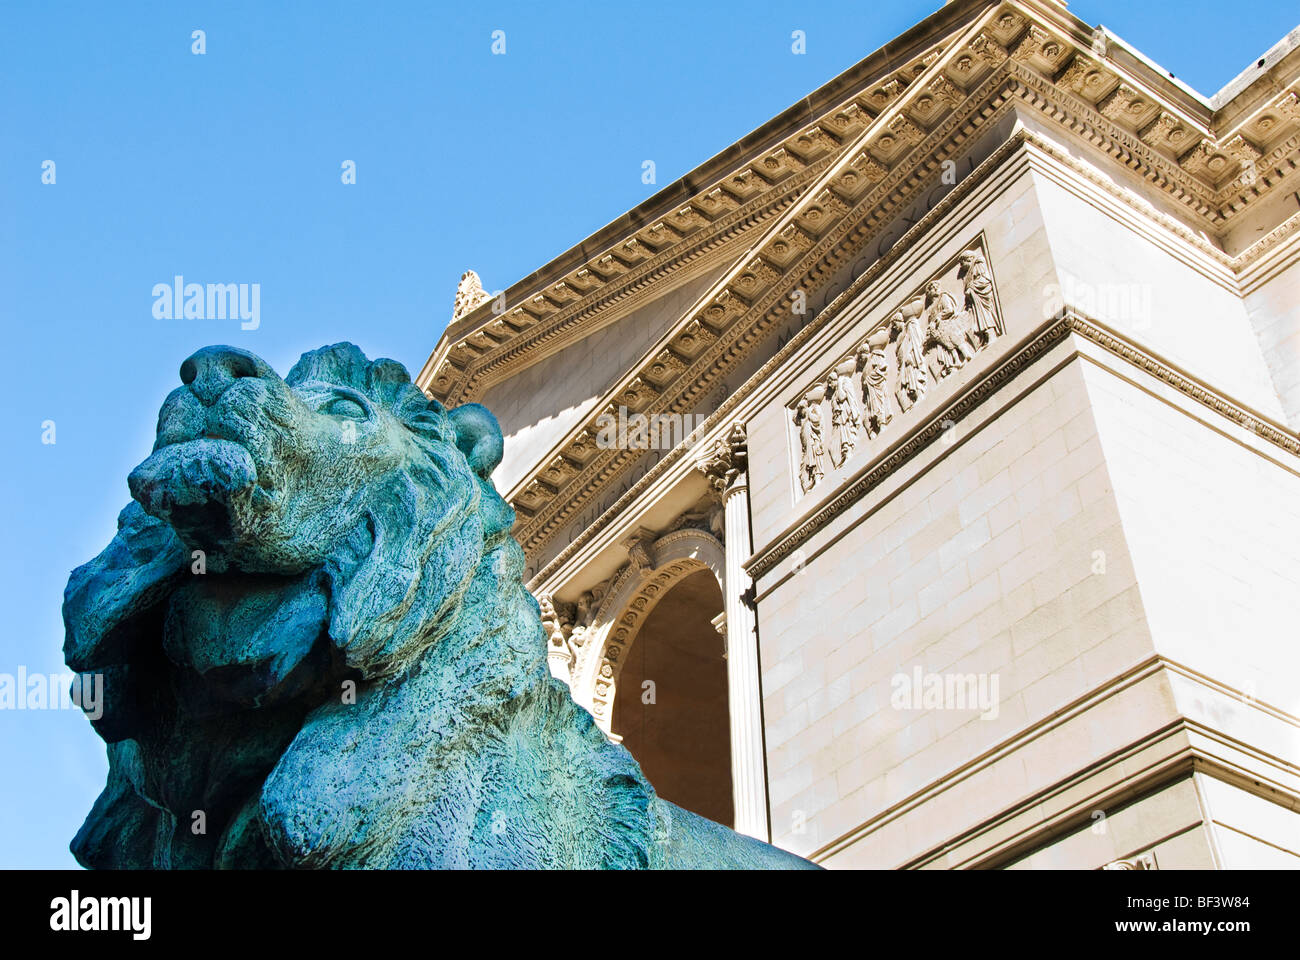 Estatua de león de bronce a la entrada del Instituto de Arte de Chicago, Chicago, Illinois, EE.UU. Foto de stock